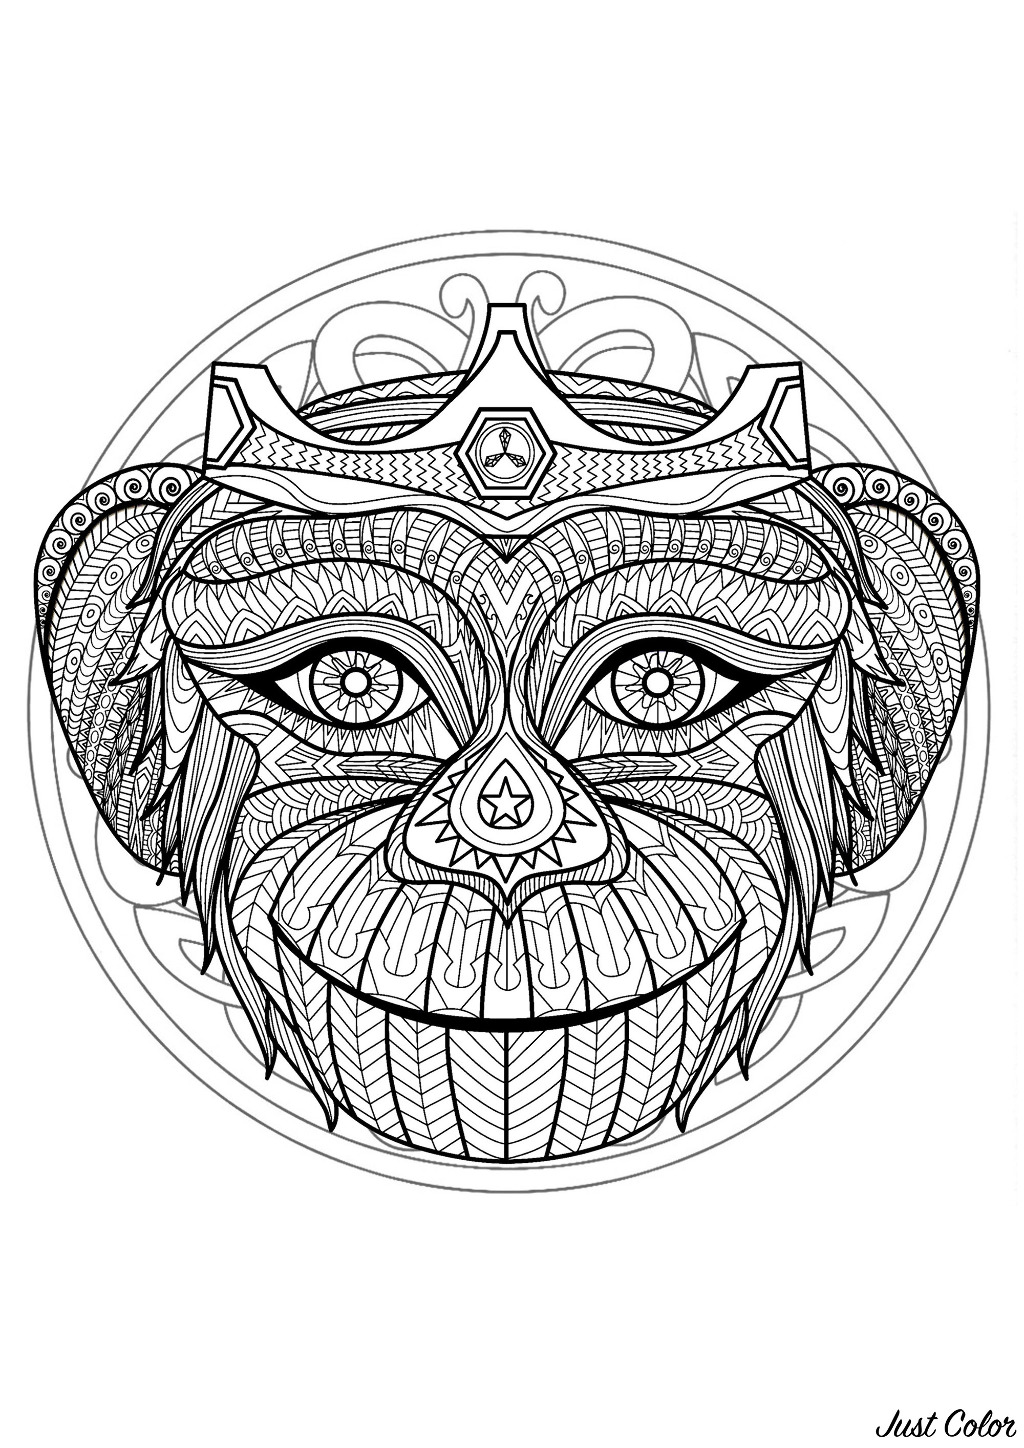 Mandala para colorear con una preciosa cabeza de mono y preciosos dibujos entrelazados de fondo